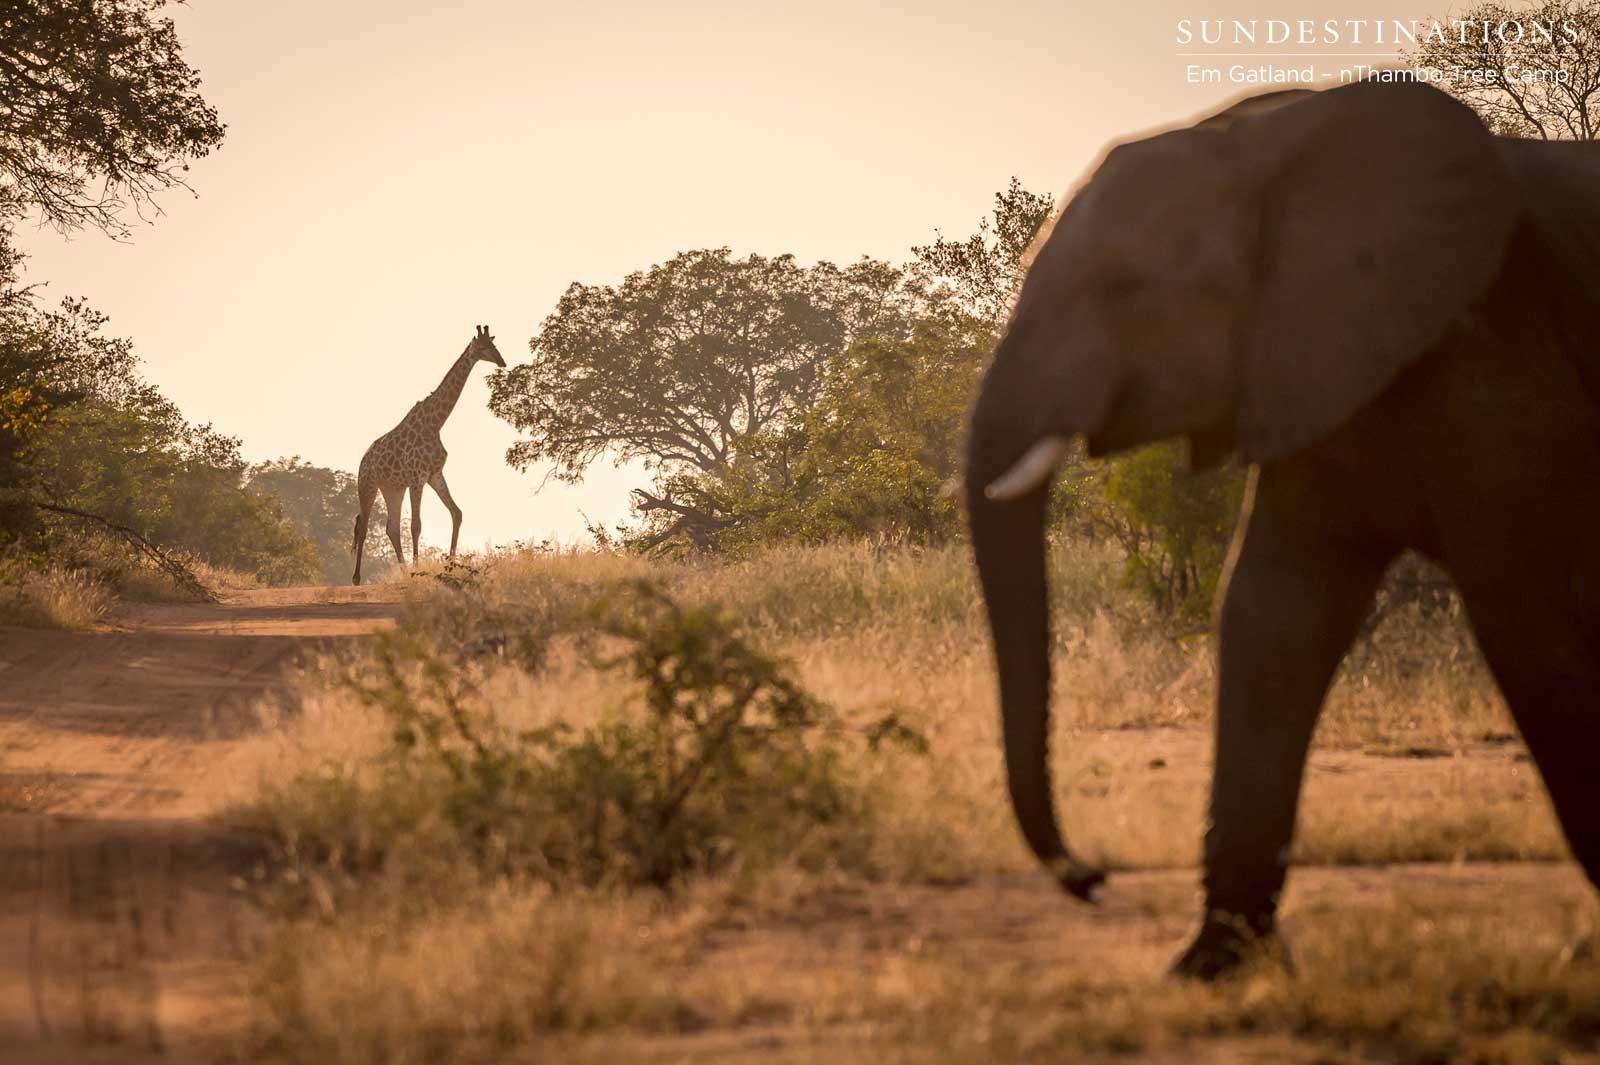 Giraffe and Elephant Klaserie